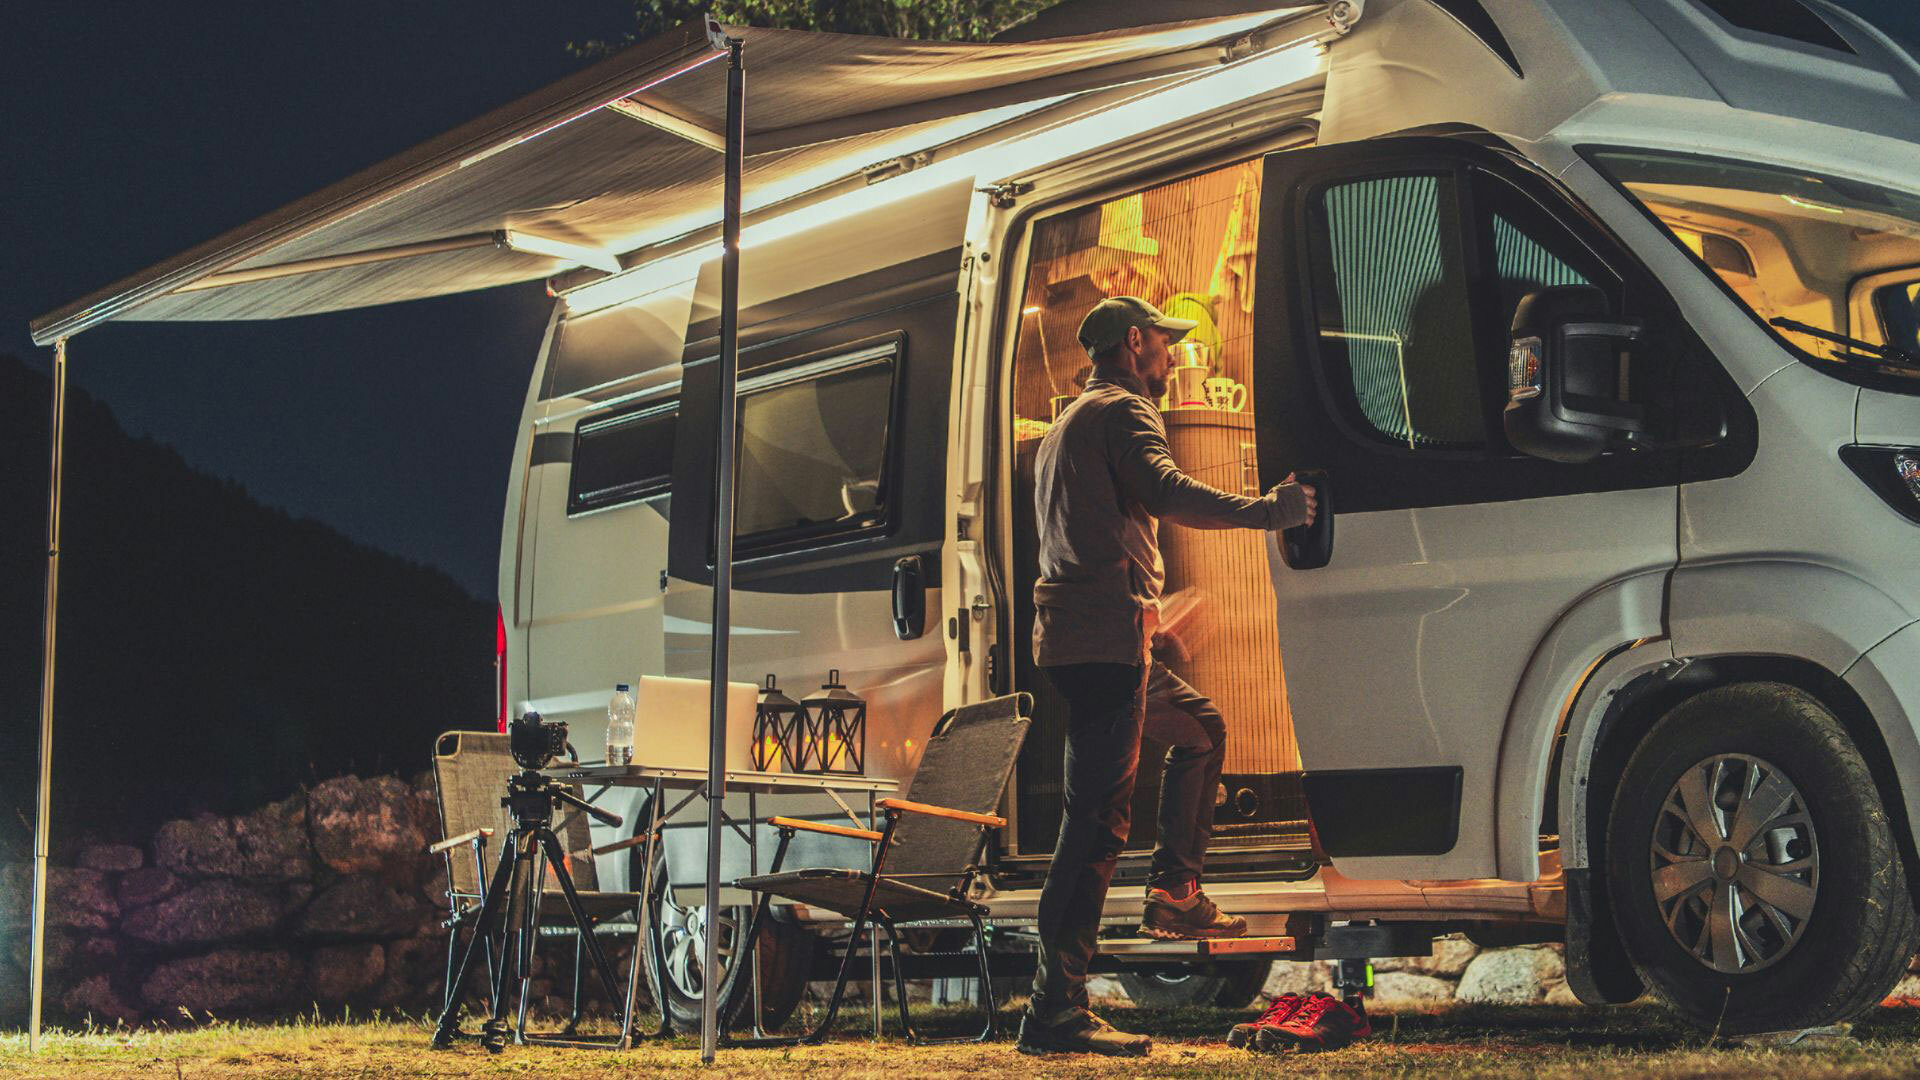 Camper Van Outdoor Lighting Setup